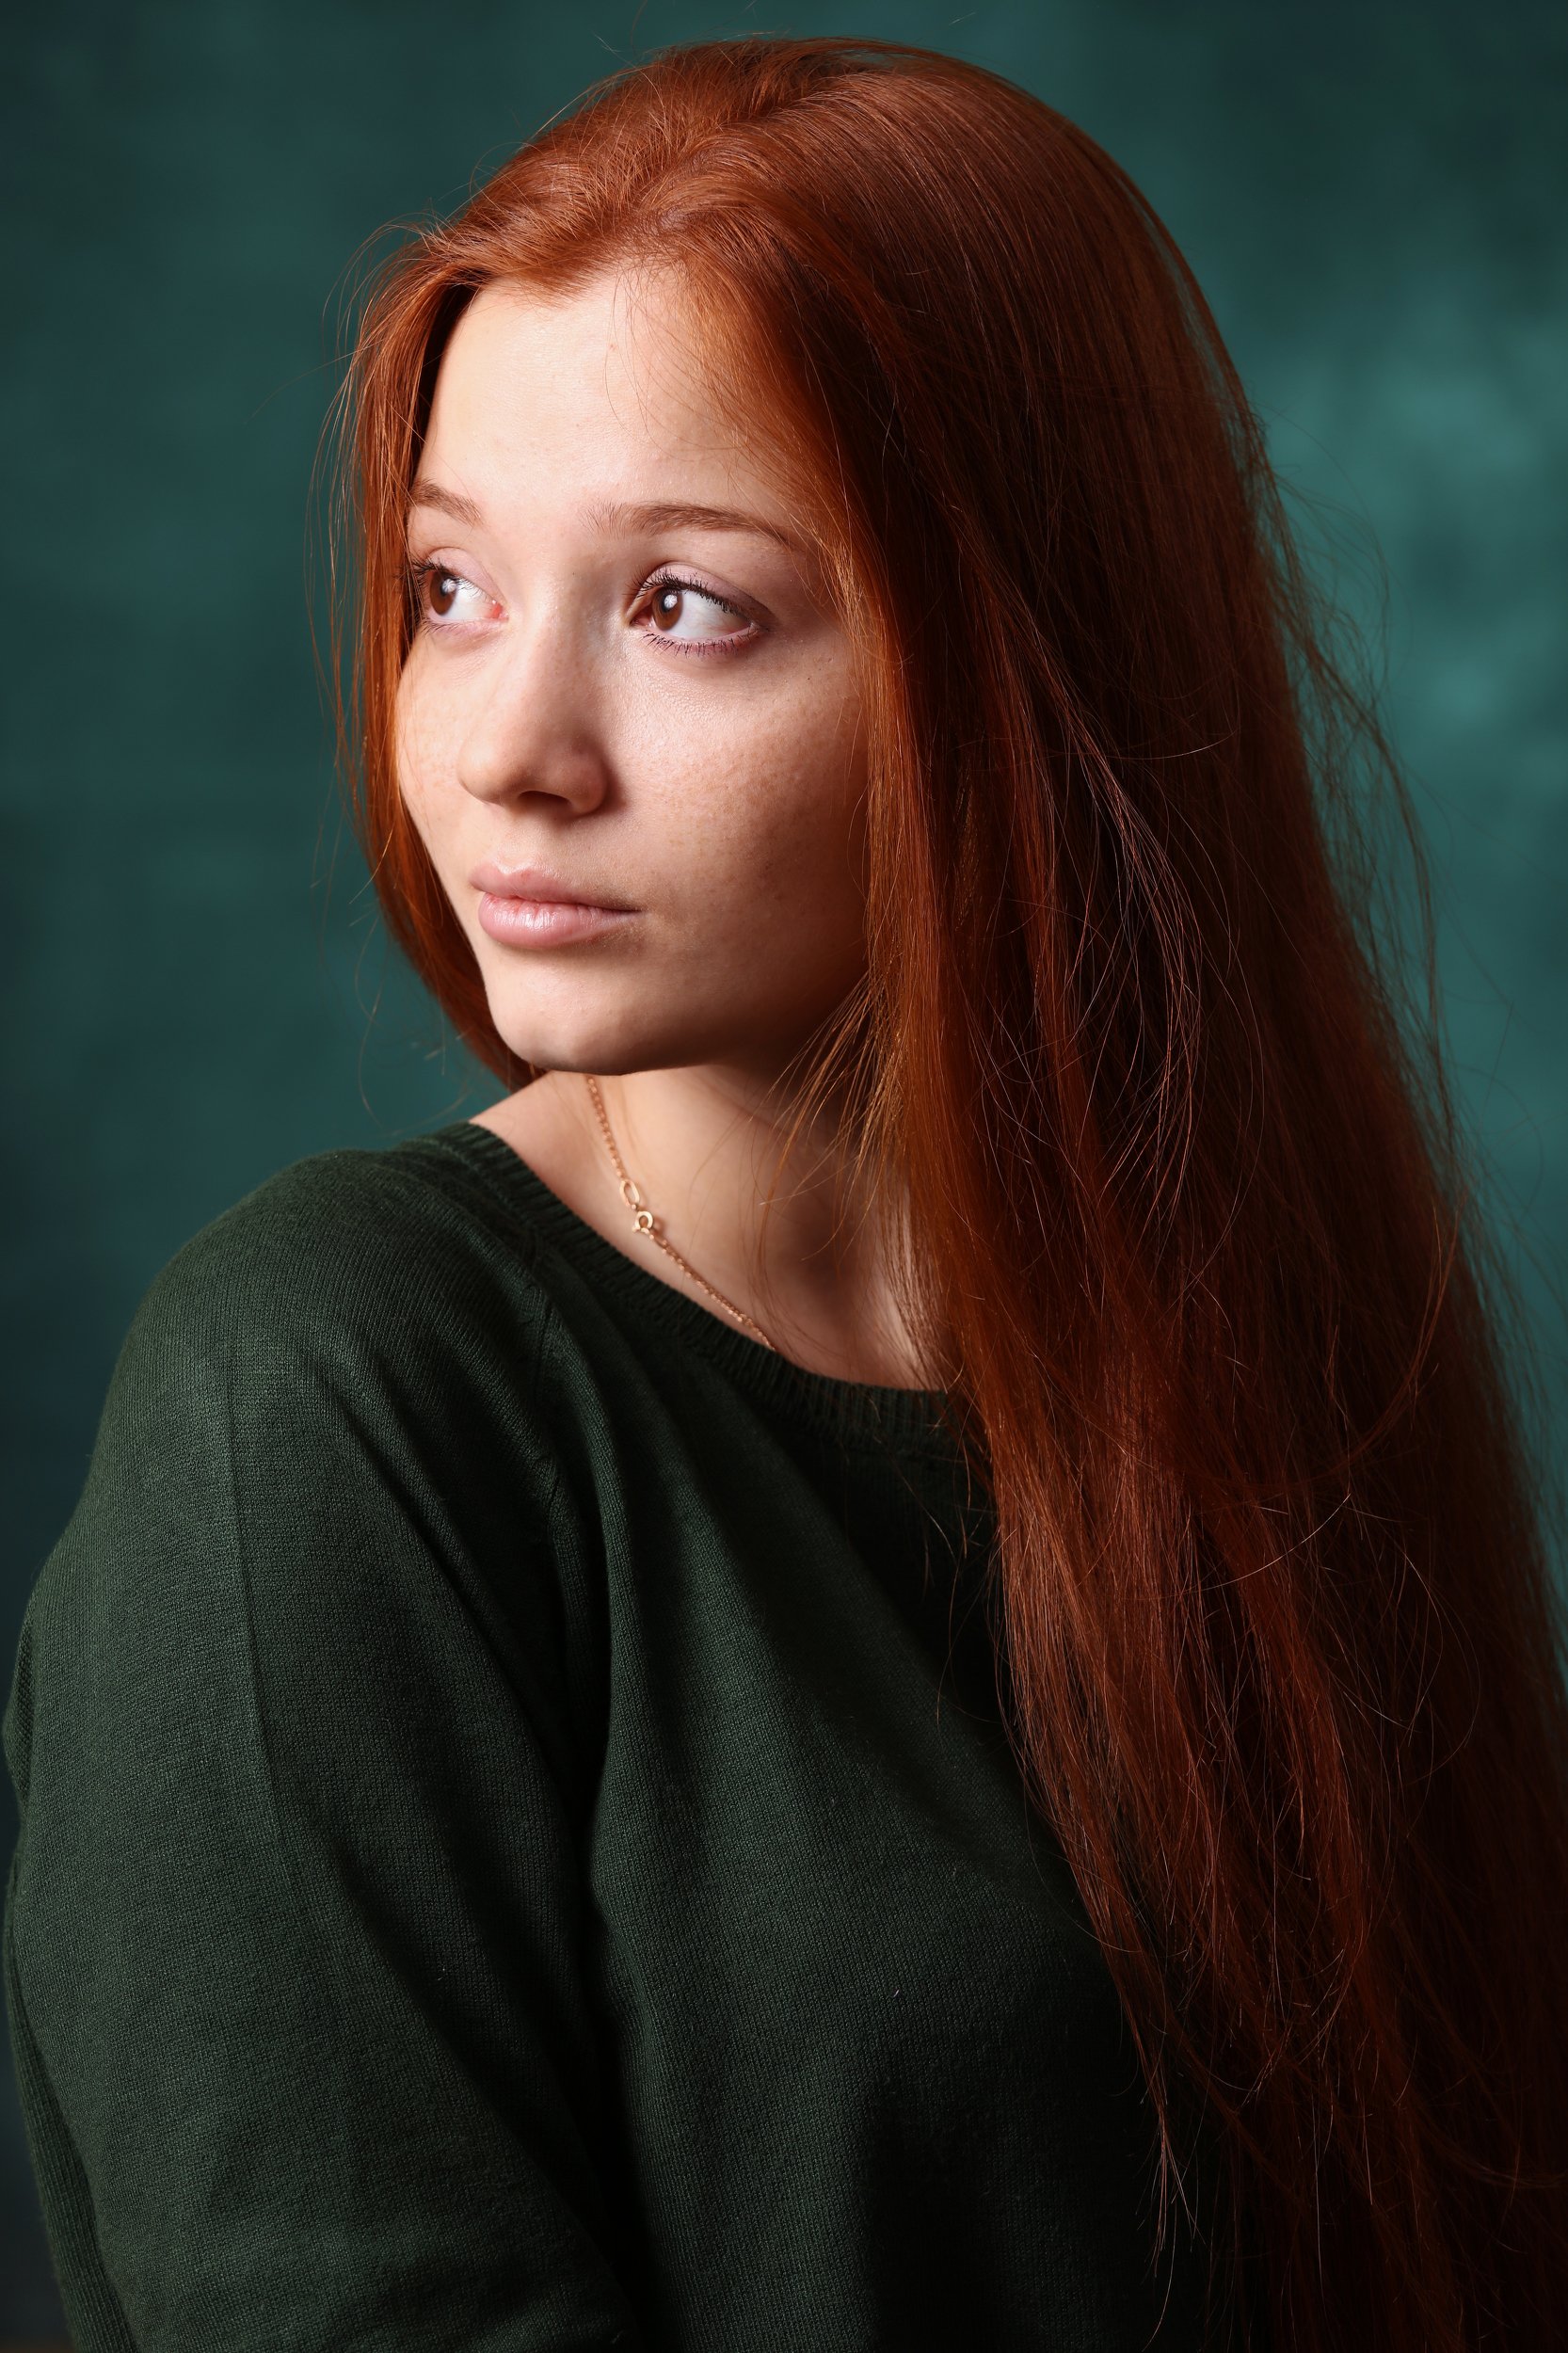 girl,portrait,red,green,рыжий,зелёный,портрет, девушка,красота,, Олег Грачёв